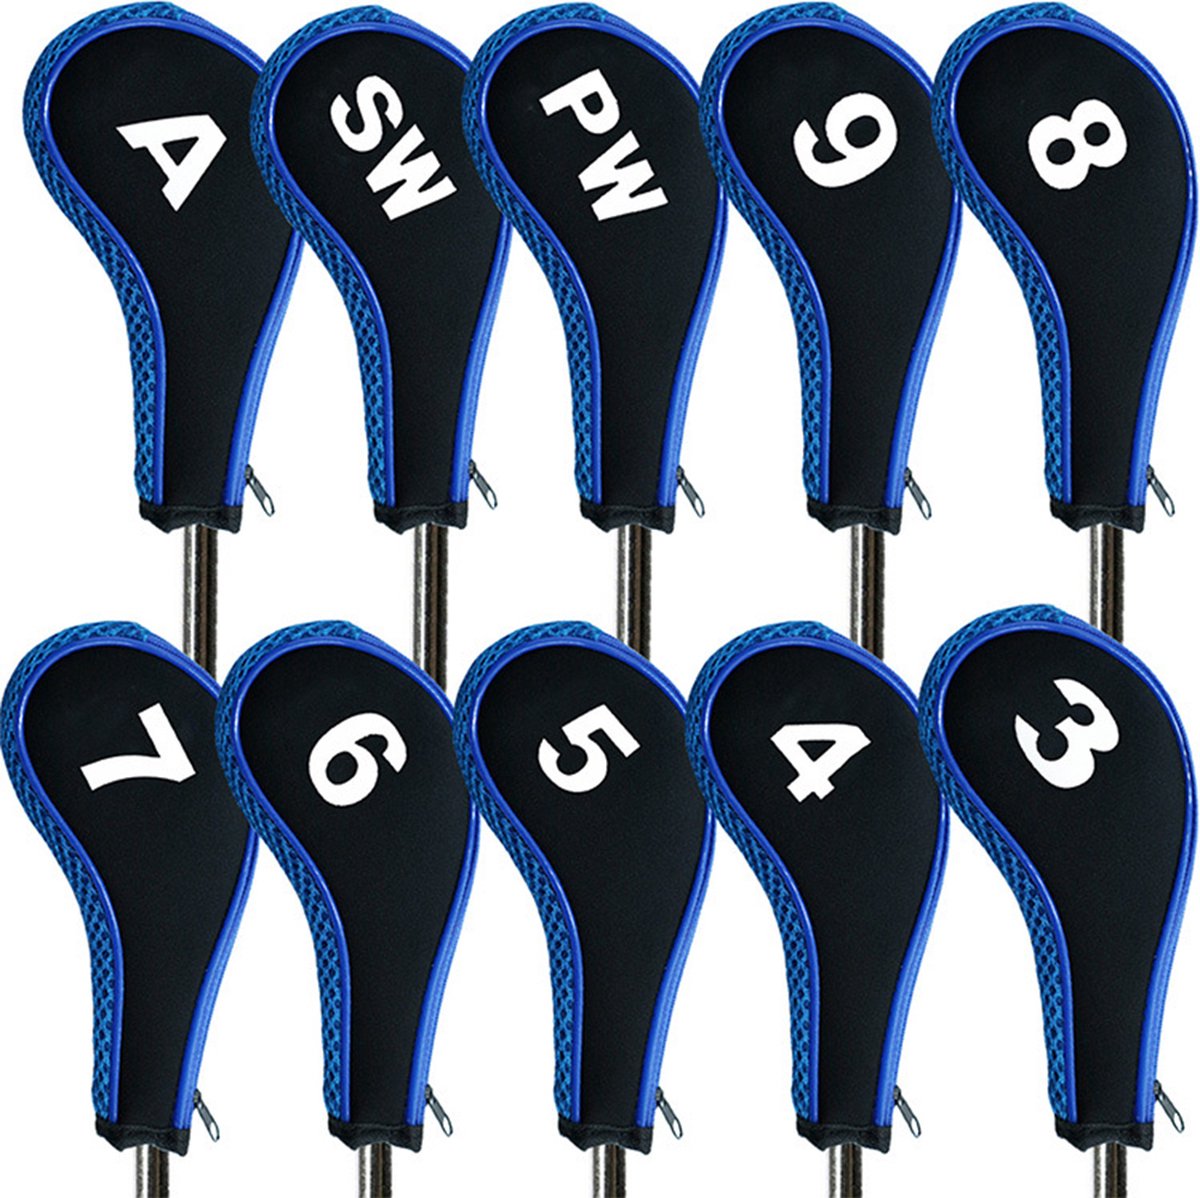 Golfclub covers - set van 10 - zwart met blauw - ijzers - met rits - XD-Xtreme - Golffmaniac